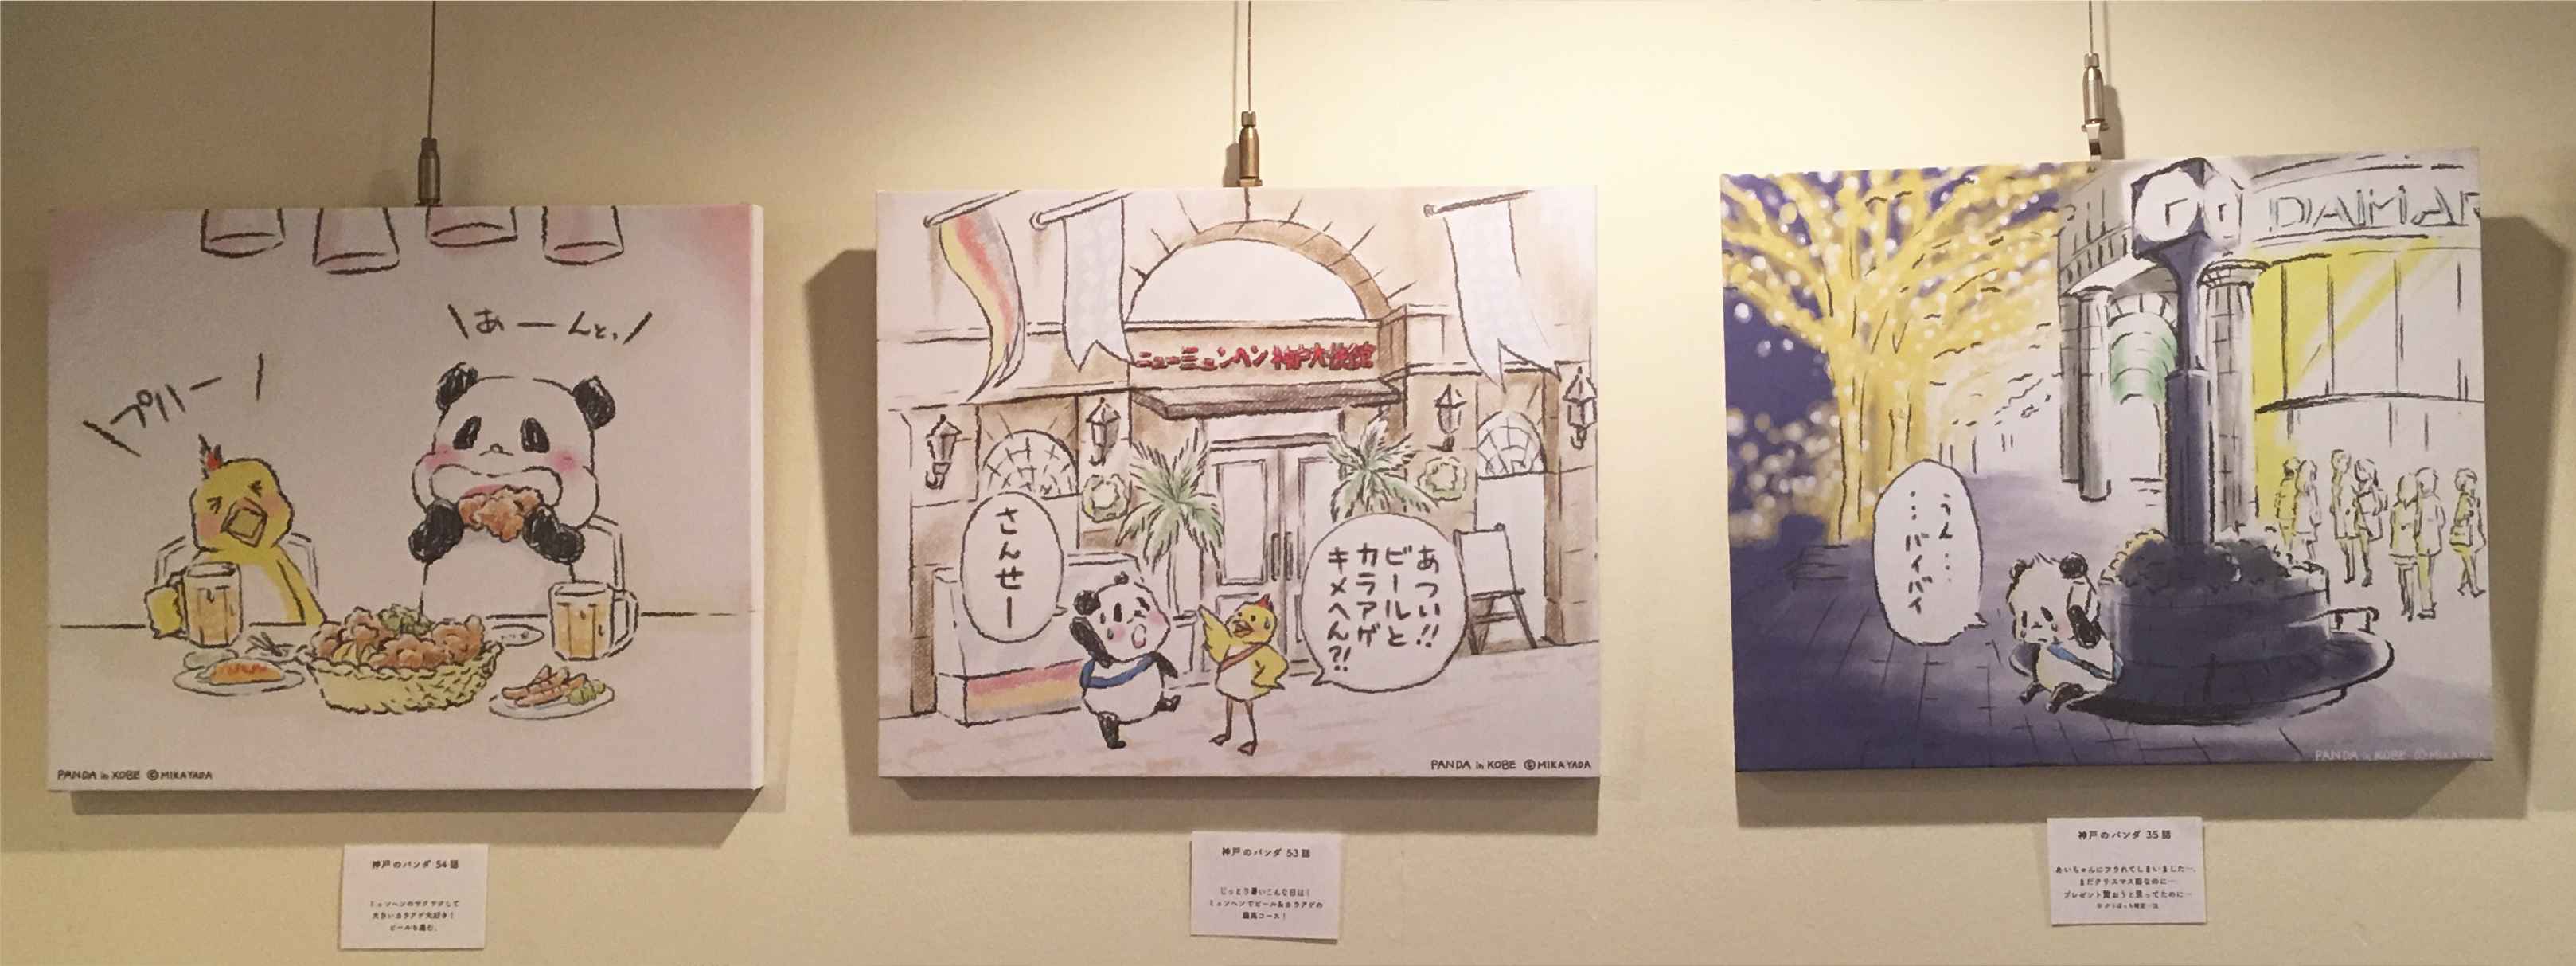 布ポスターでイラストを出力 神戸のパンダ展vol 2 矢田 ミカ様 印刷事例216 プリオ